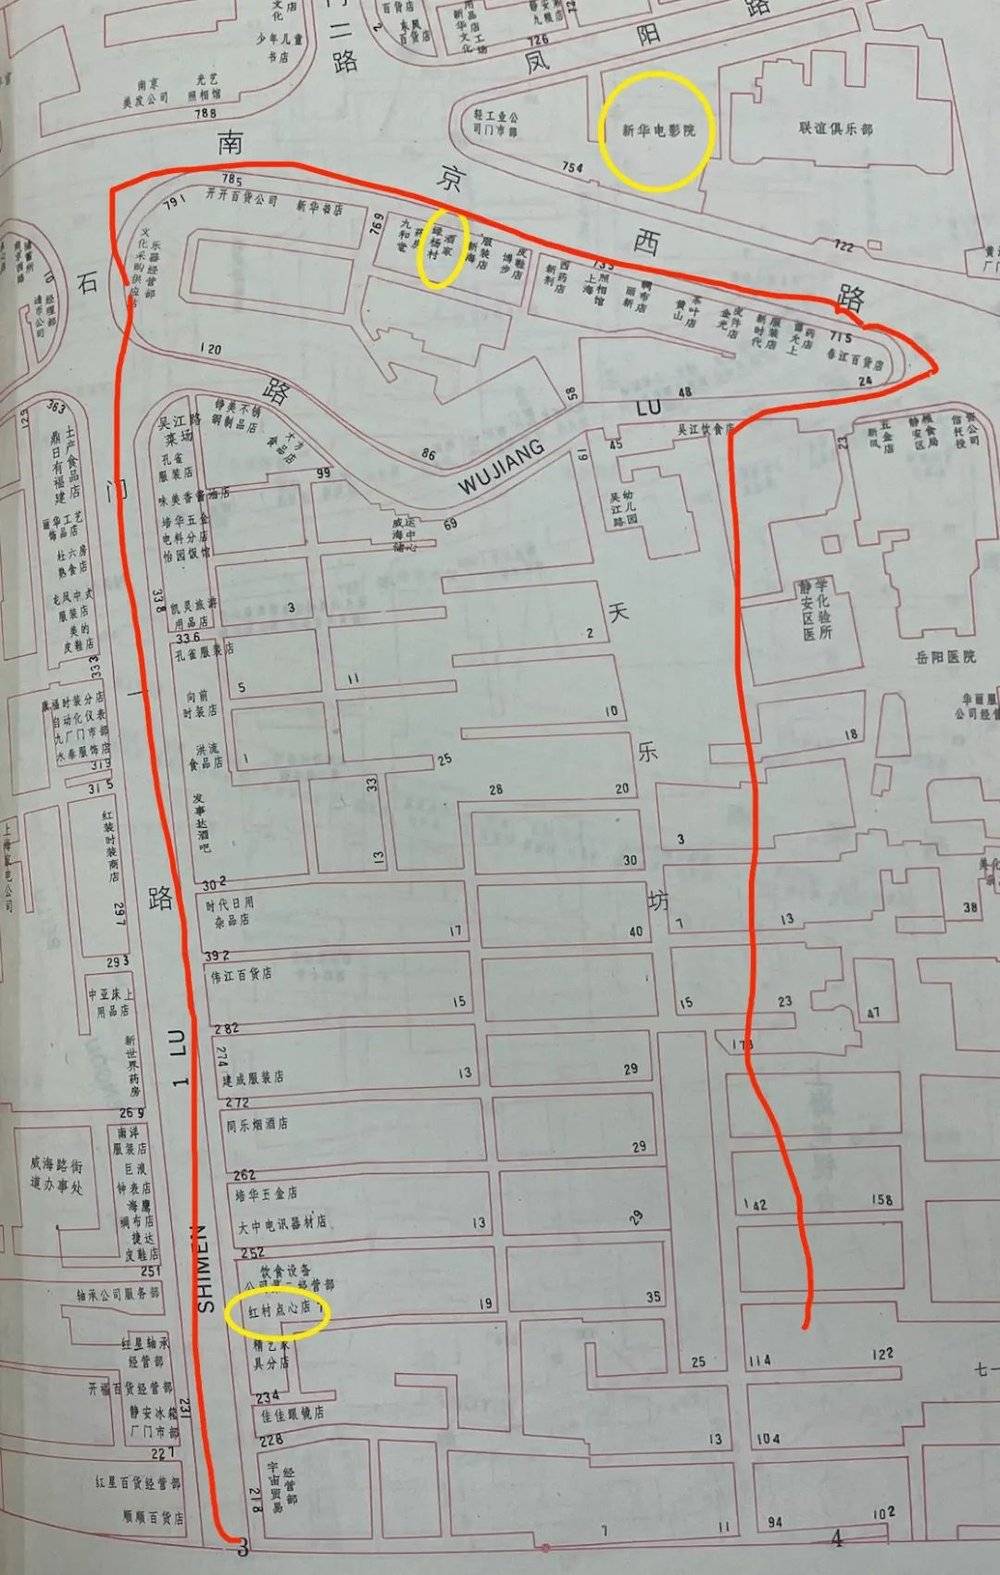 1989年出版的《上海市商用地图册》上，红圈是兴业太古汇所占地块的一部分黄圈是一些现已消失或搬迁的商铺、场所